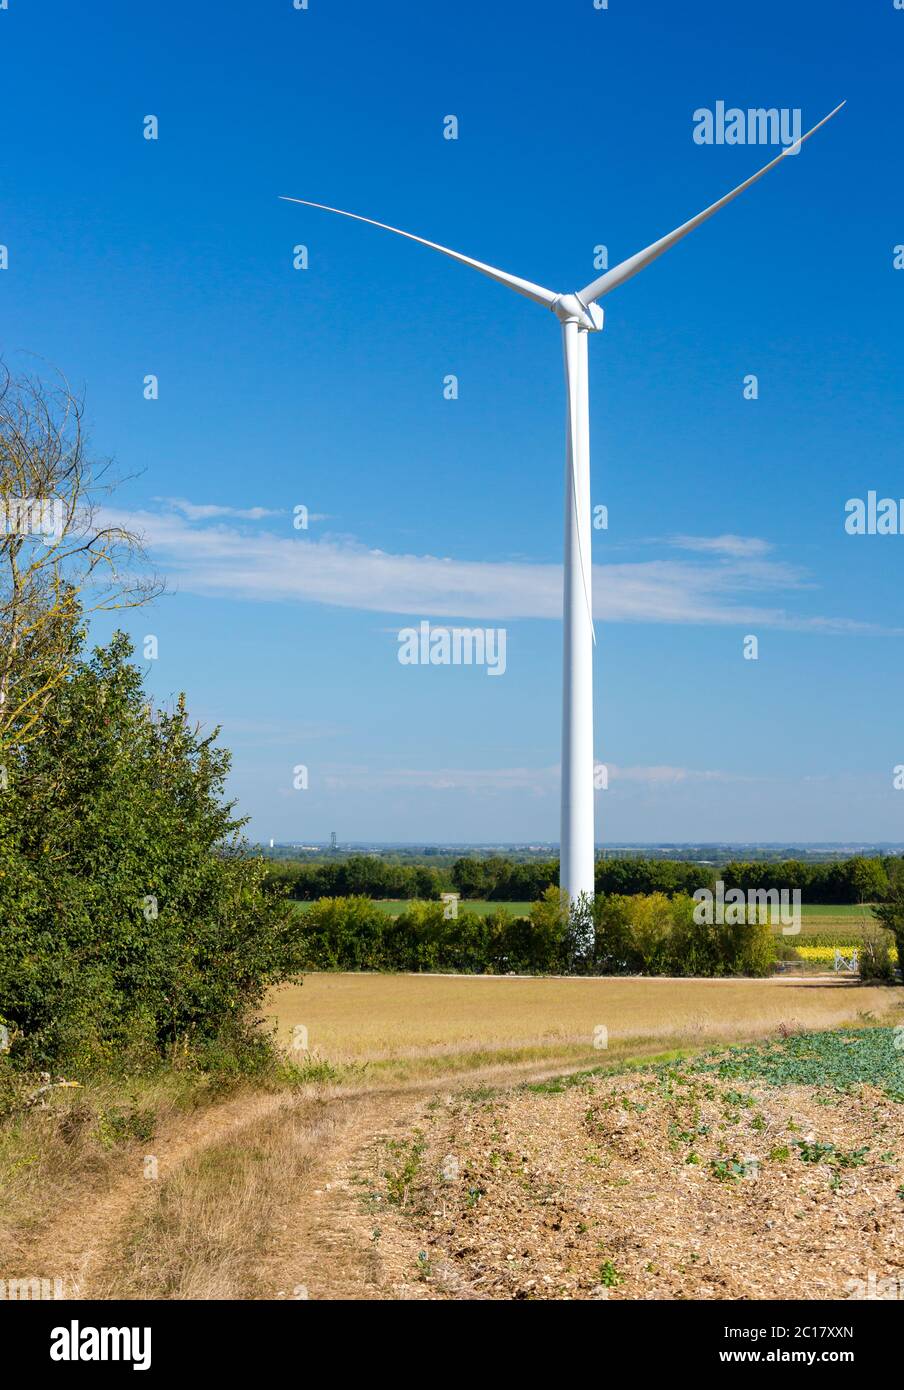 Éoliennes produisant de l'électricité avec ciel bleu - concept de conservation de l'énergie Banque D'Images